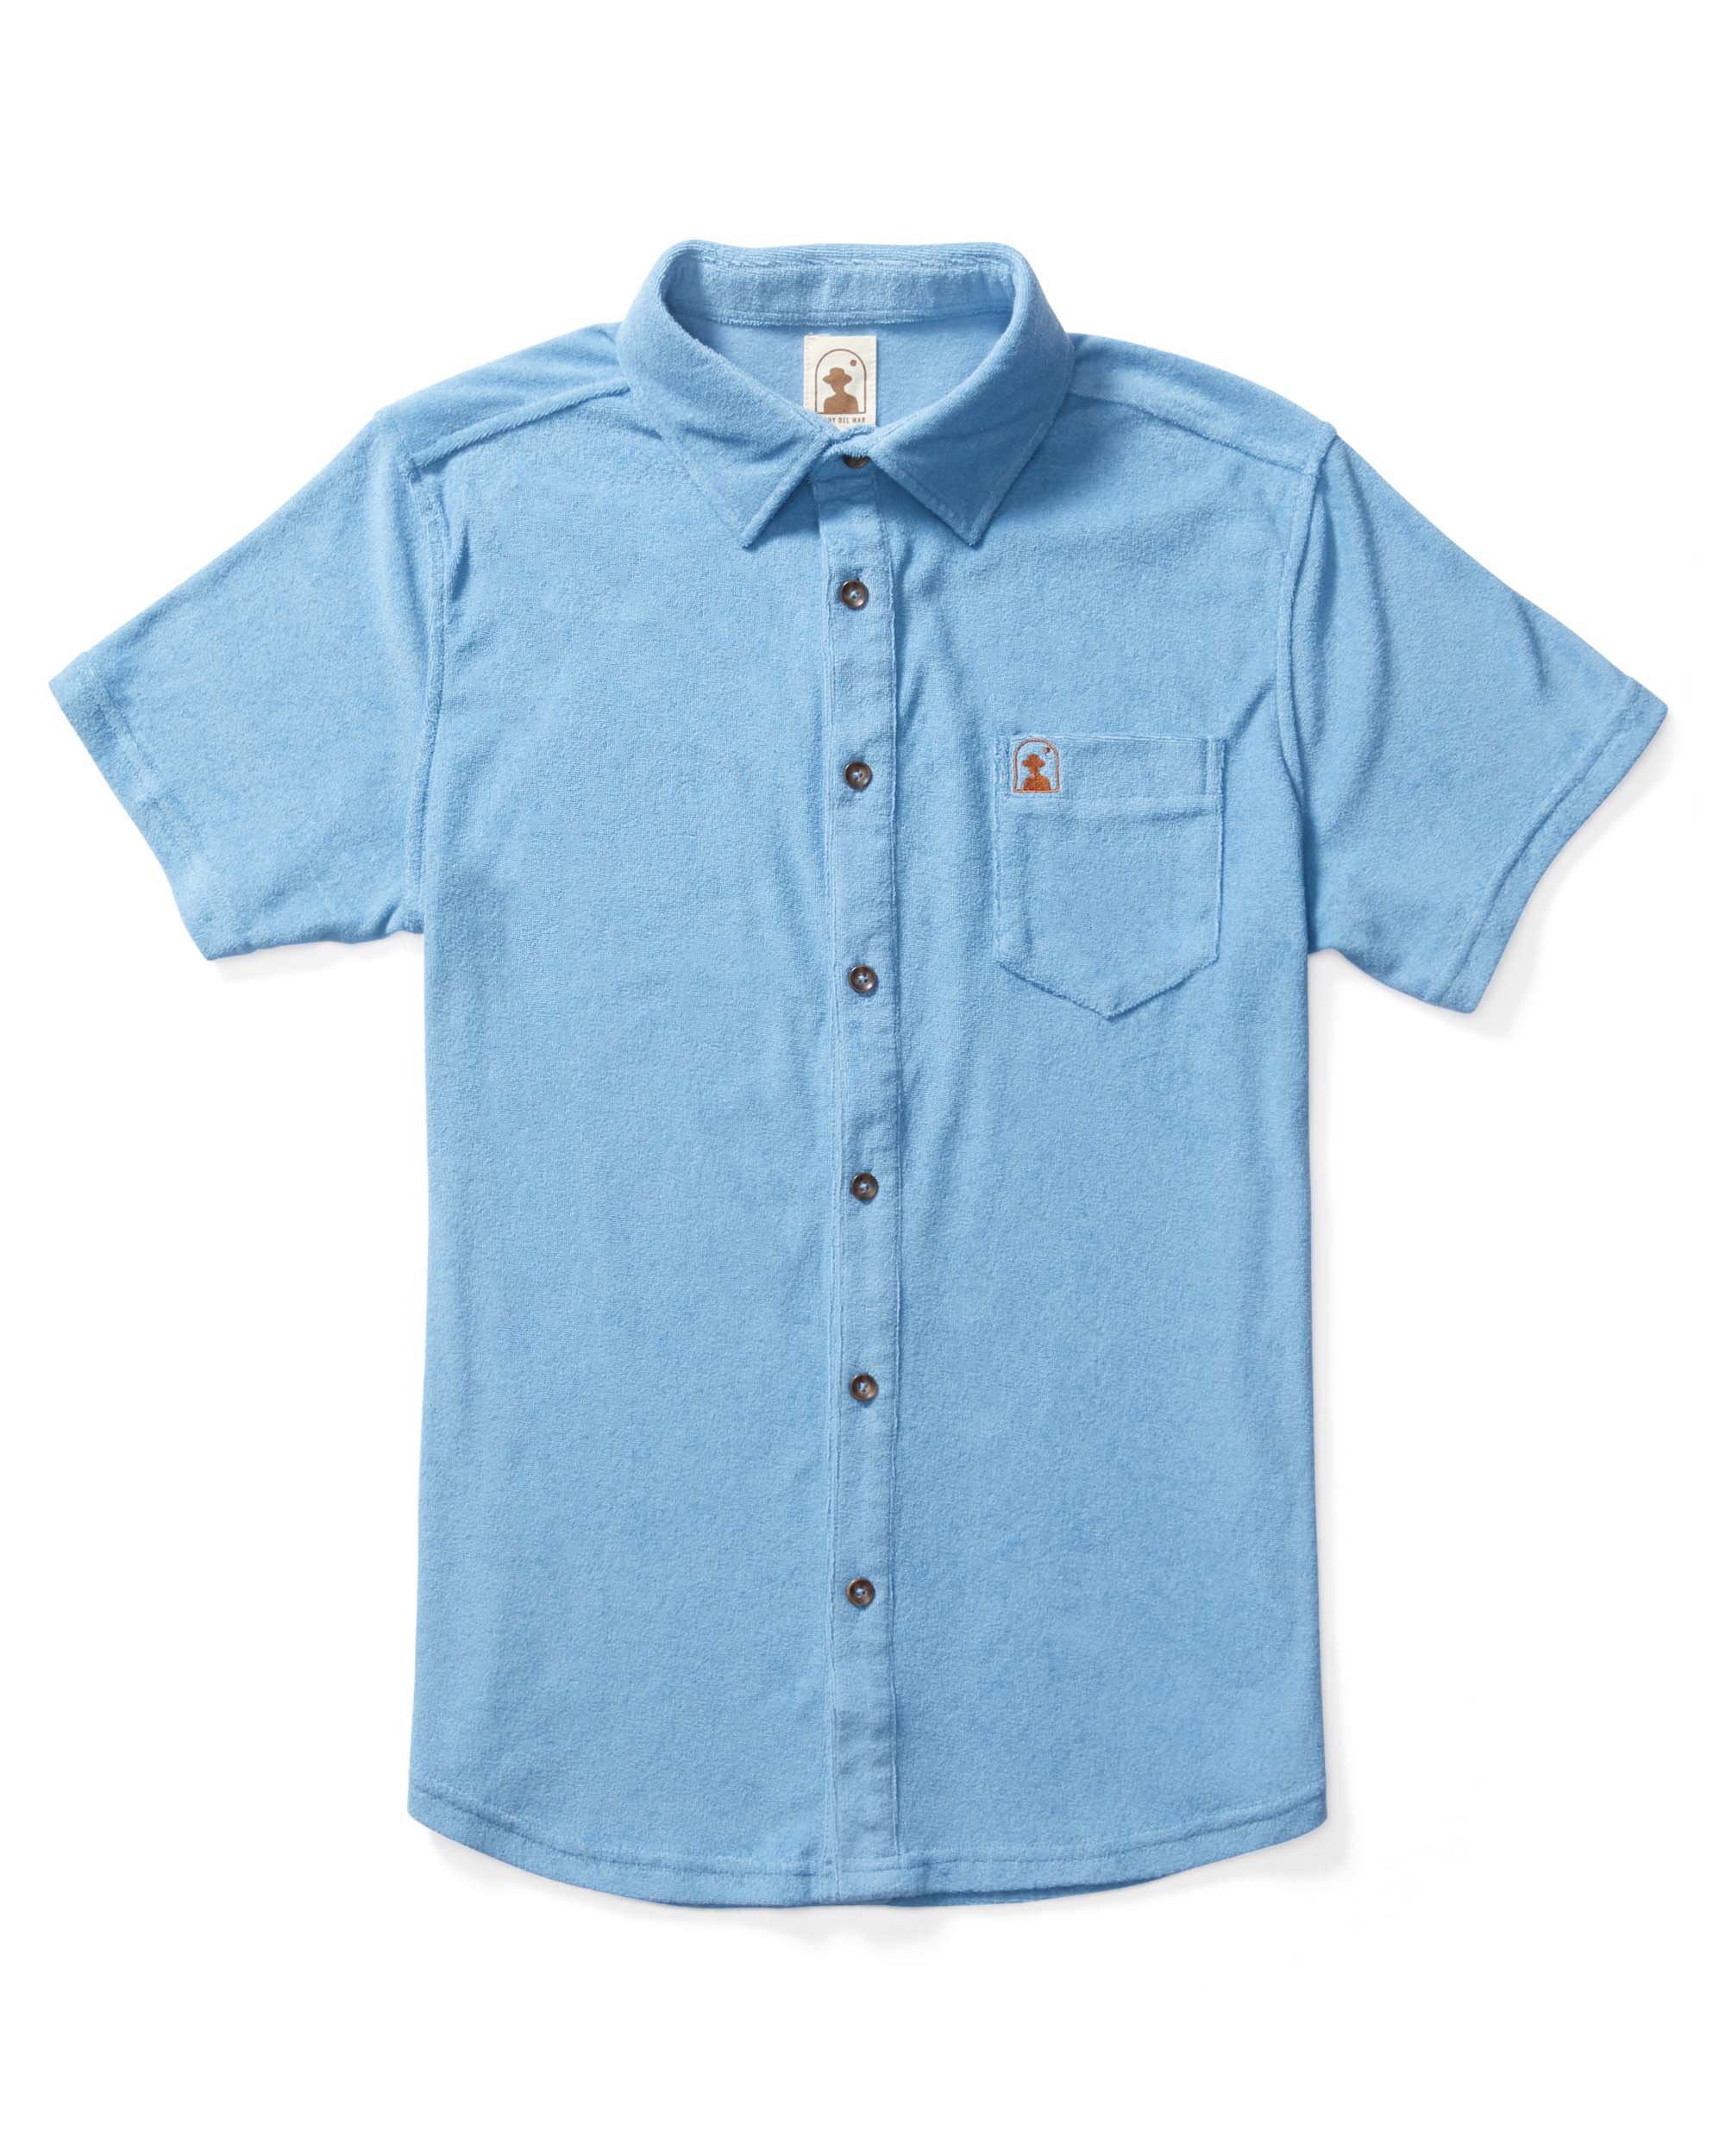 Image of The Tropez Terry Cloth Shirt - Soft Sky Blue